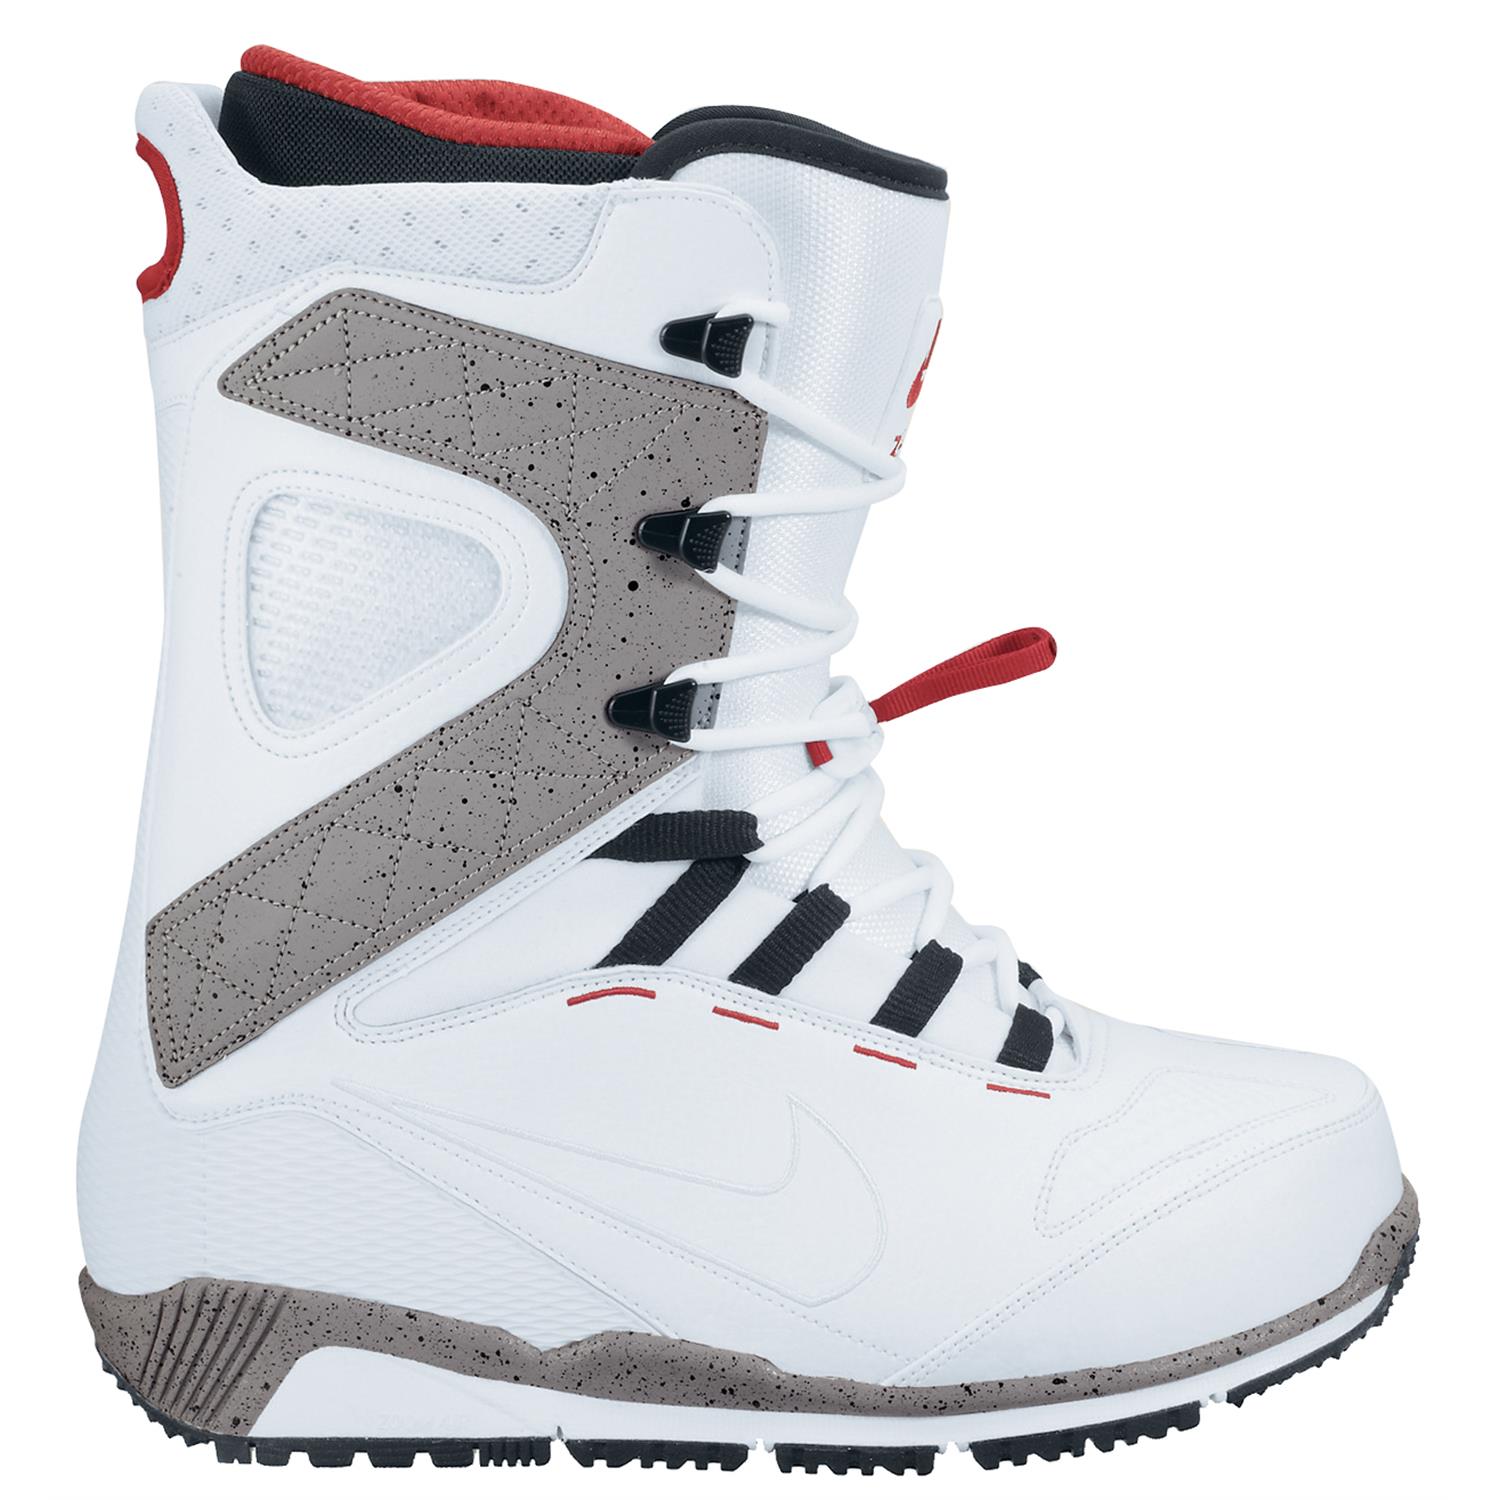 Nike SB Zoom Kaiju Snowboard Boots 2015 | evo